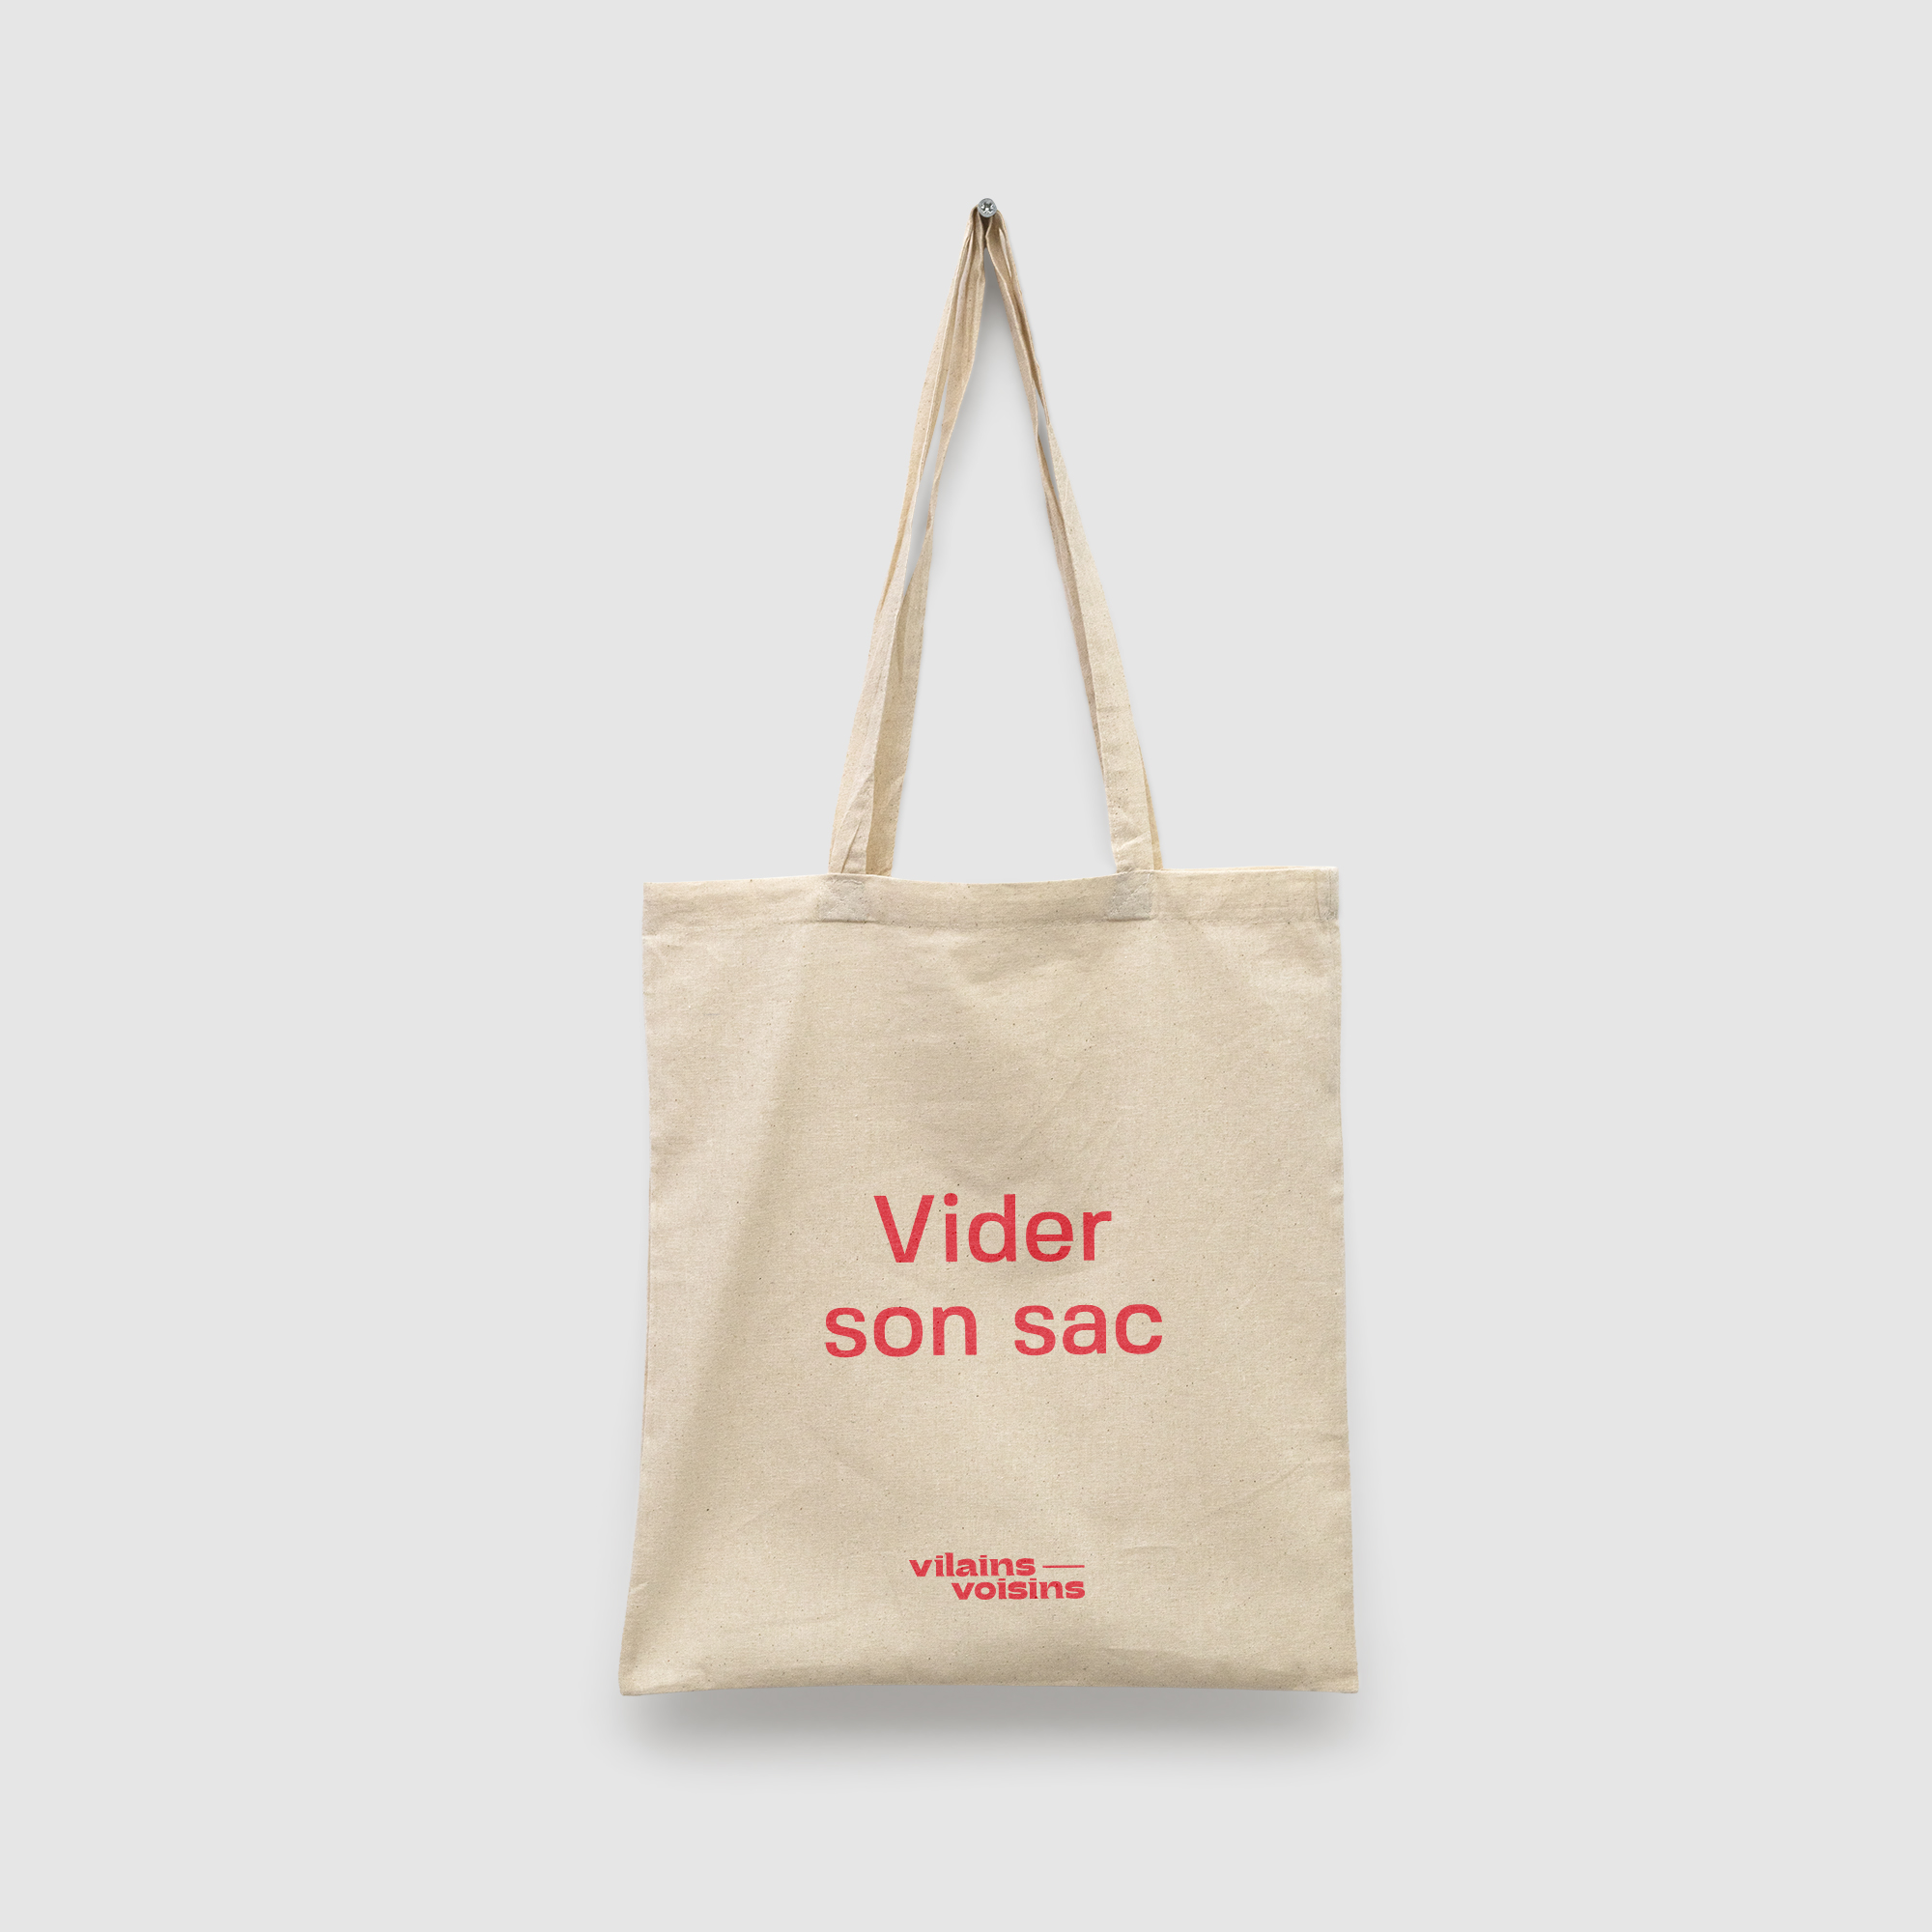 Tote bag naturel, avec le texte vider son sac en rouge, de vilains-voisins imprimerie et studio de design graphique à Rethel, dans les Ardennes.